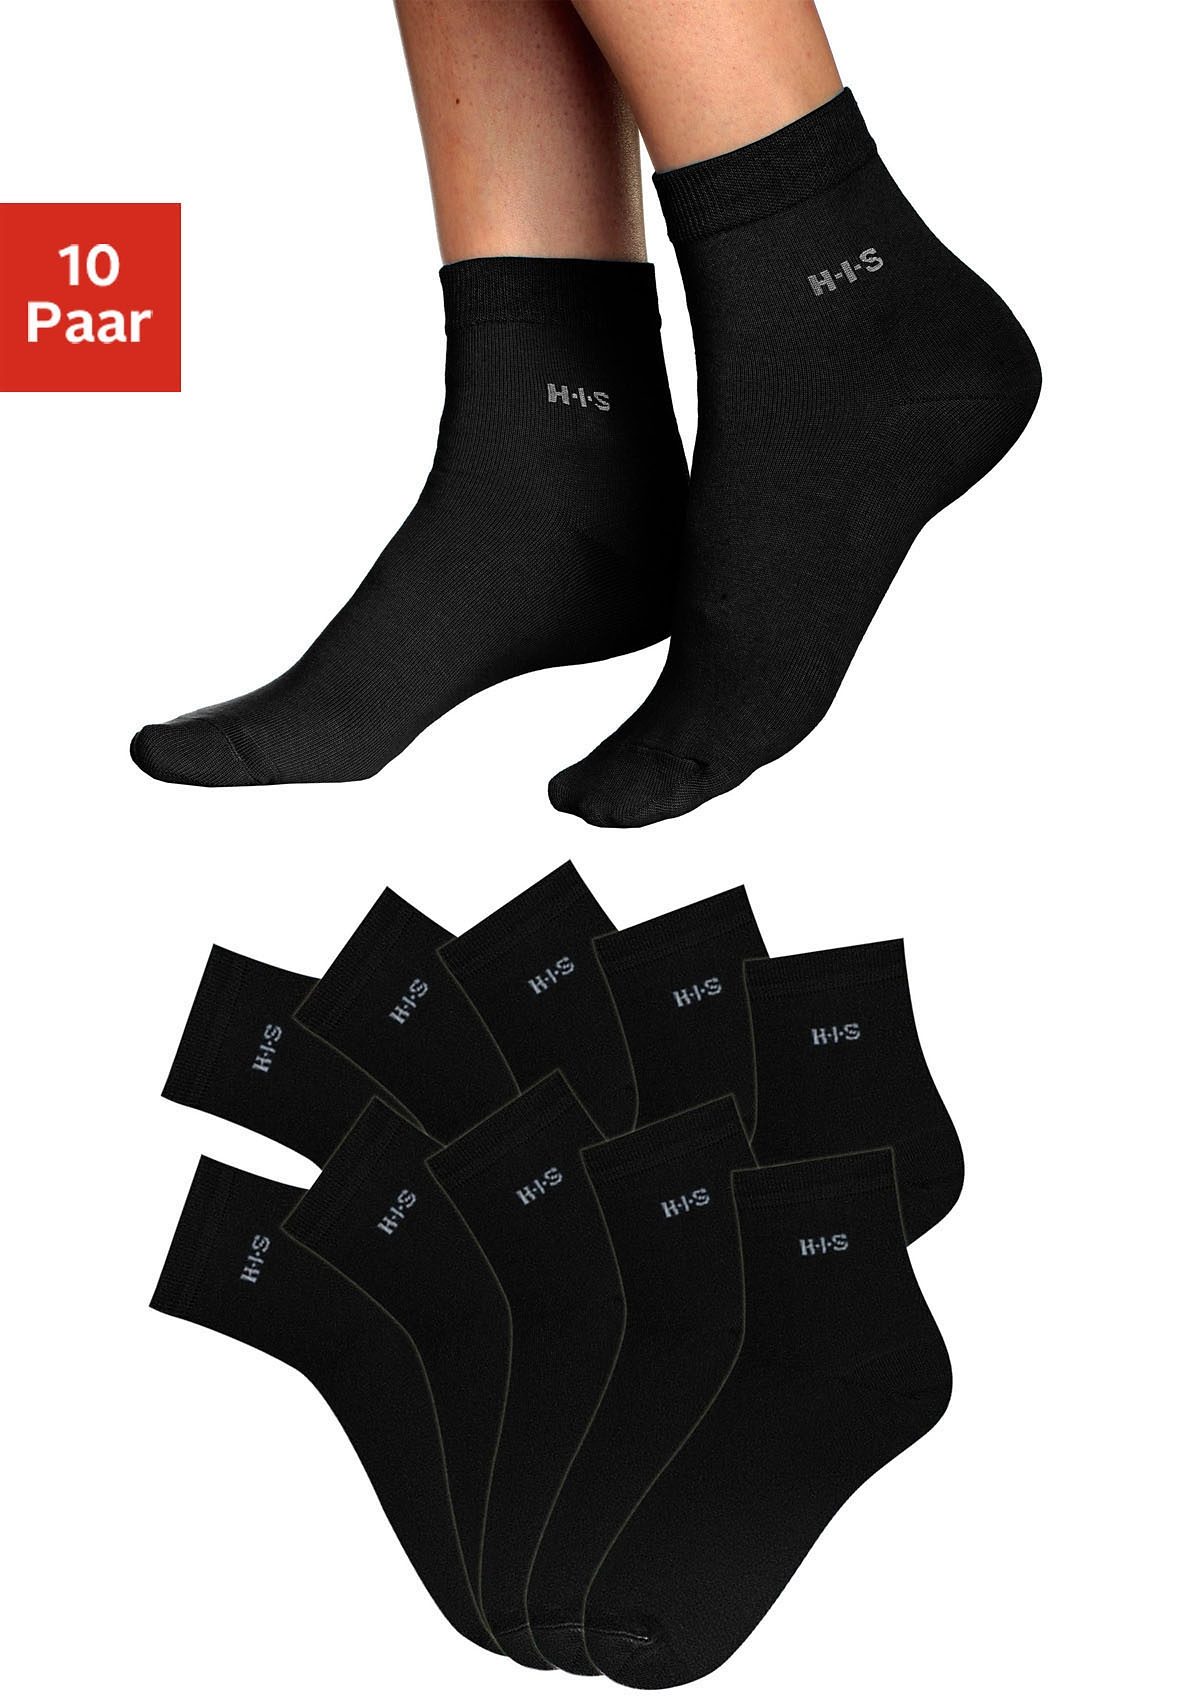 H.I.S Korte sokken lichte, ventilerende kwaliteit (10 paar)